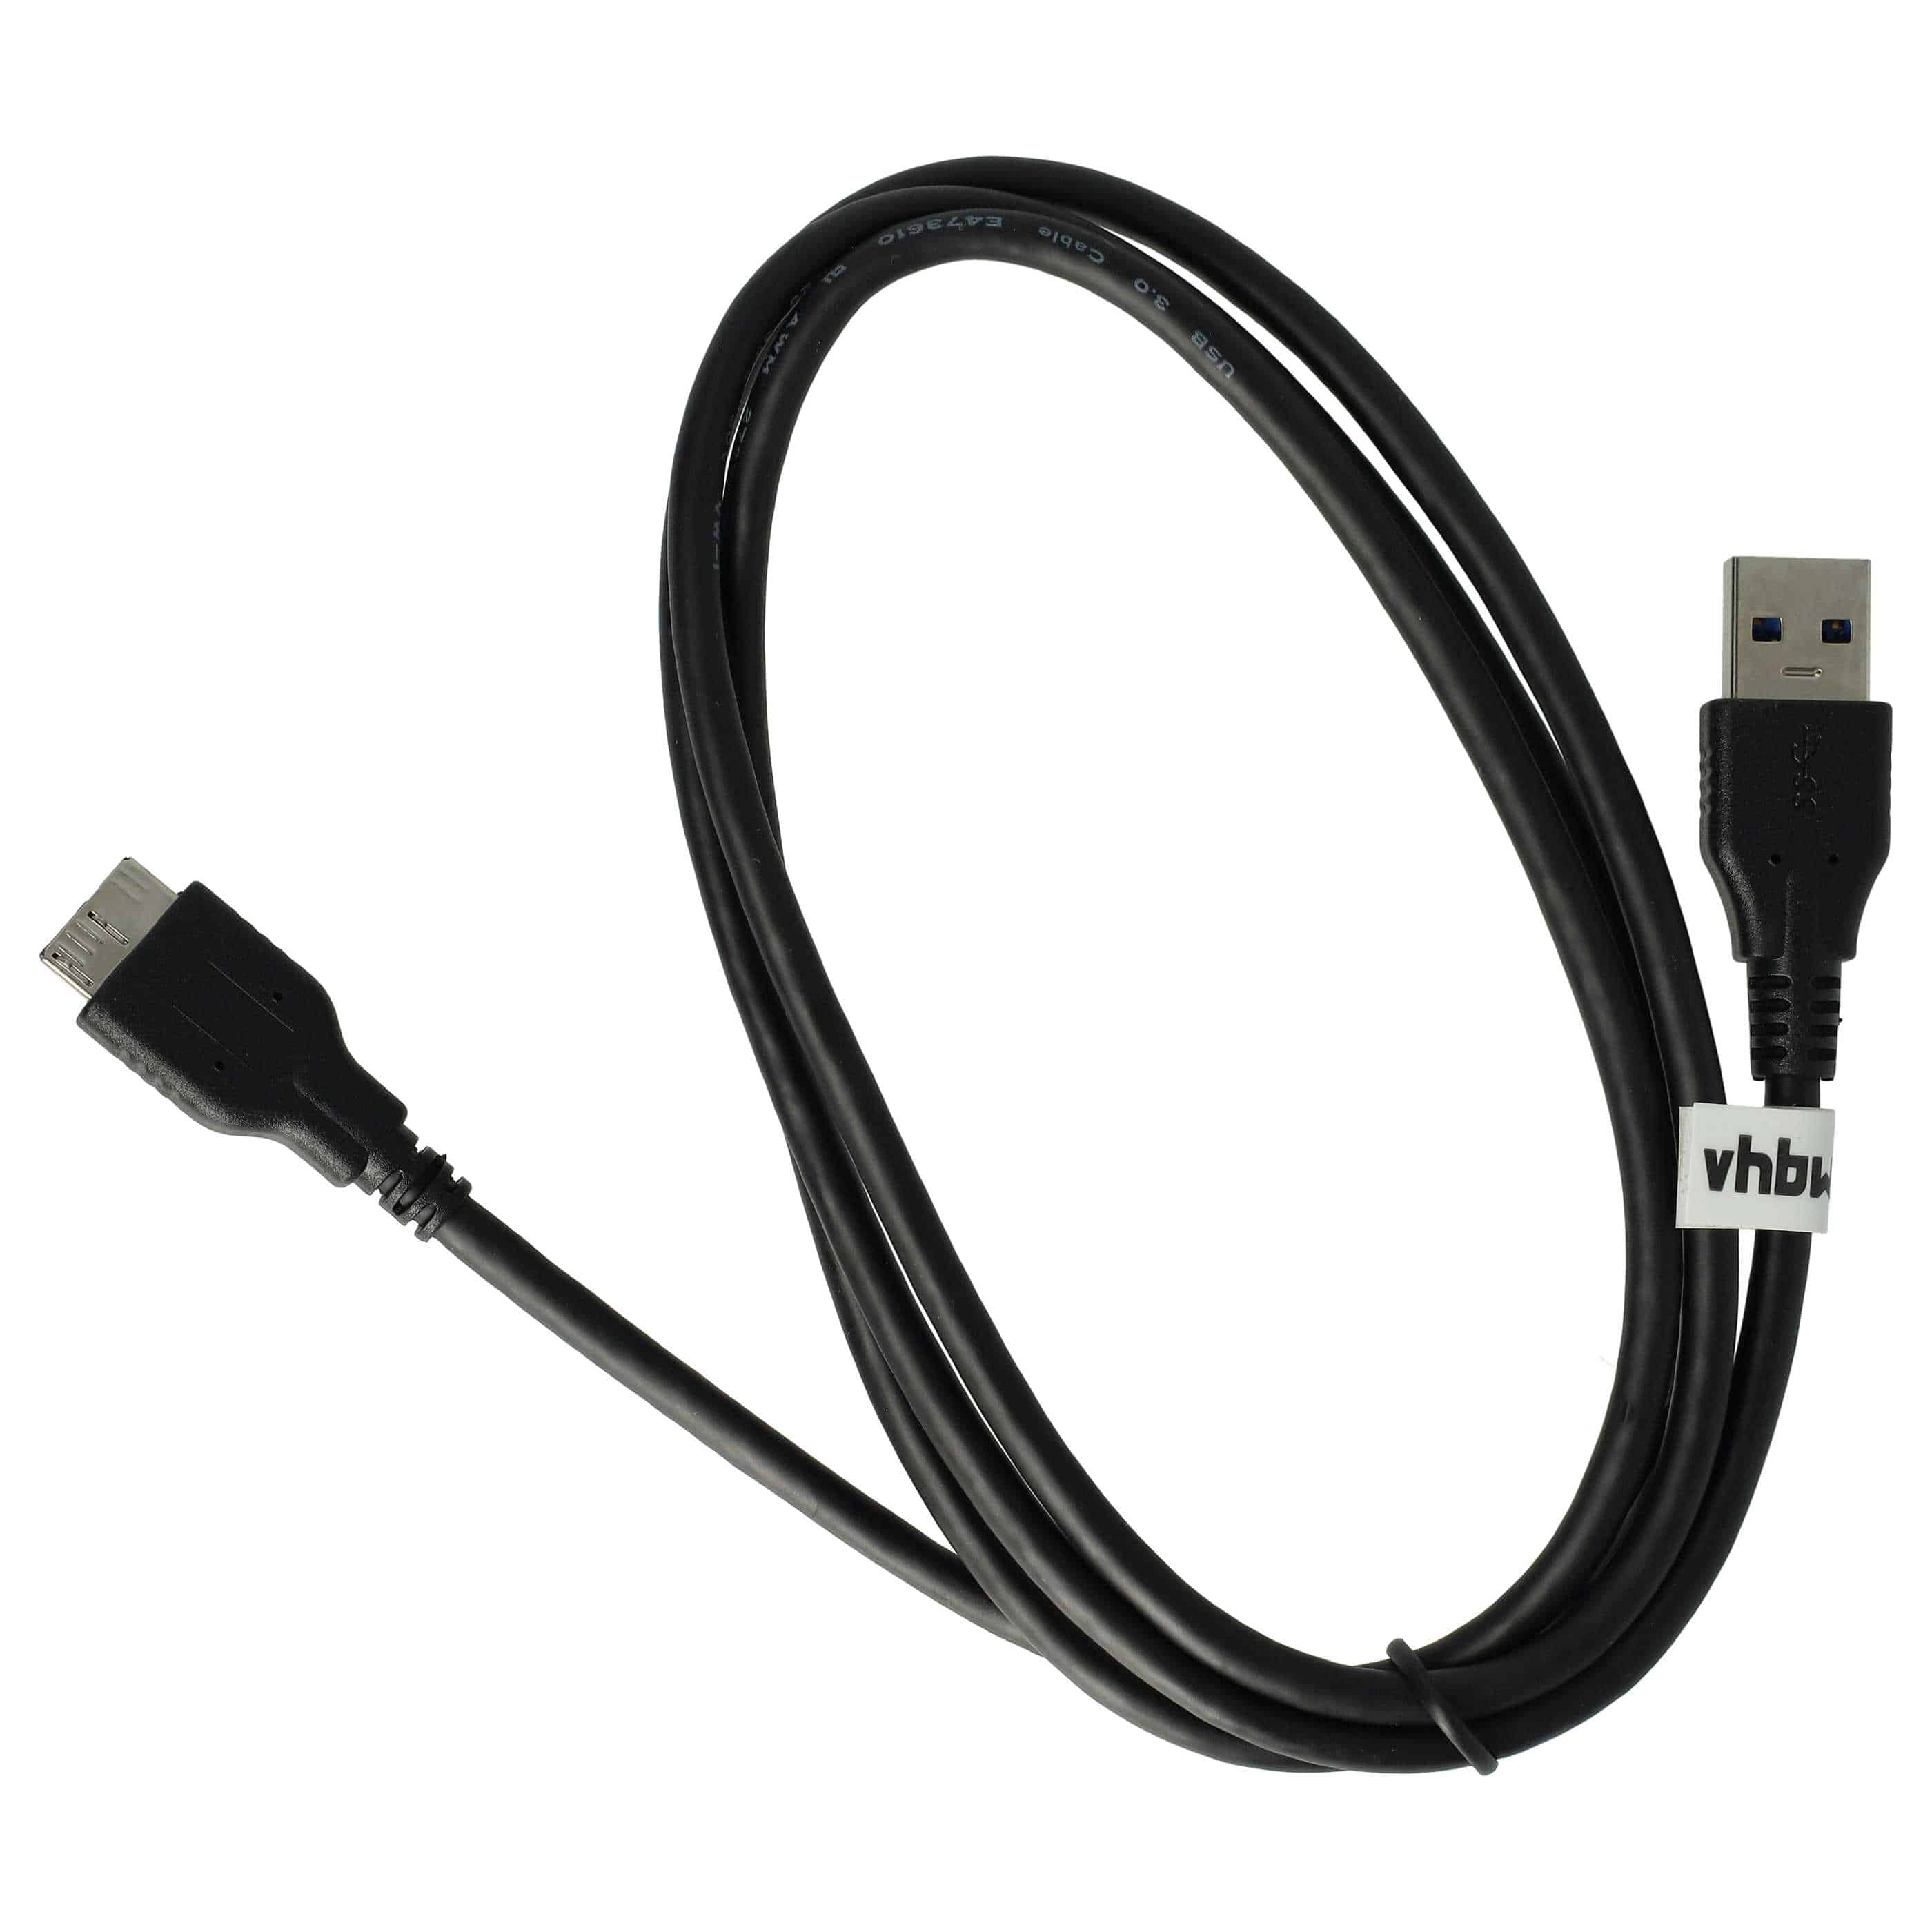 USB Datenkabel als Ersatz für Nikon UC-E14, UC-E22 für Kamera - 150 cm